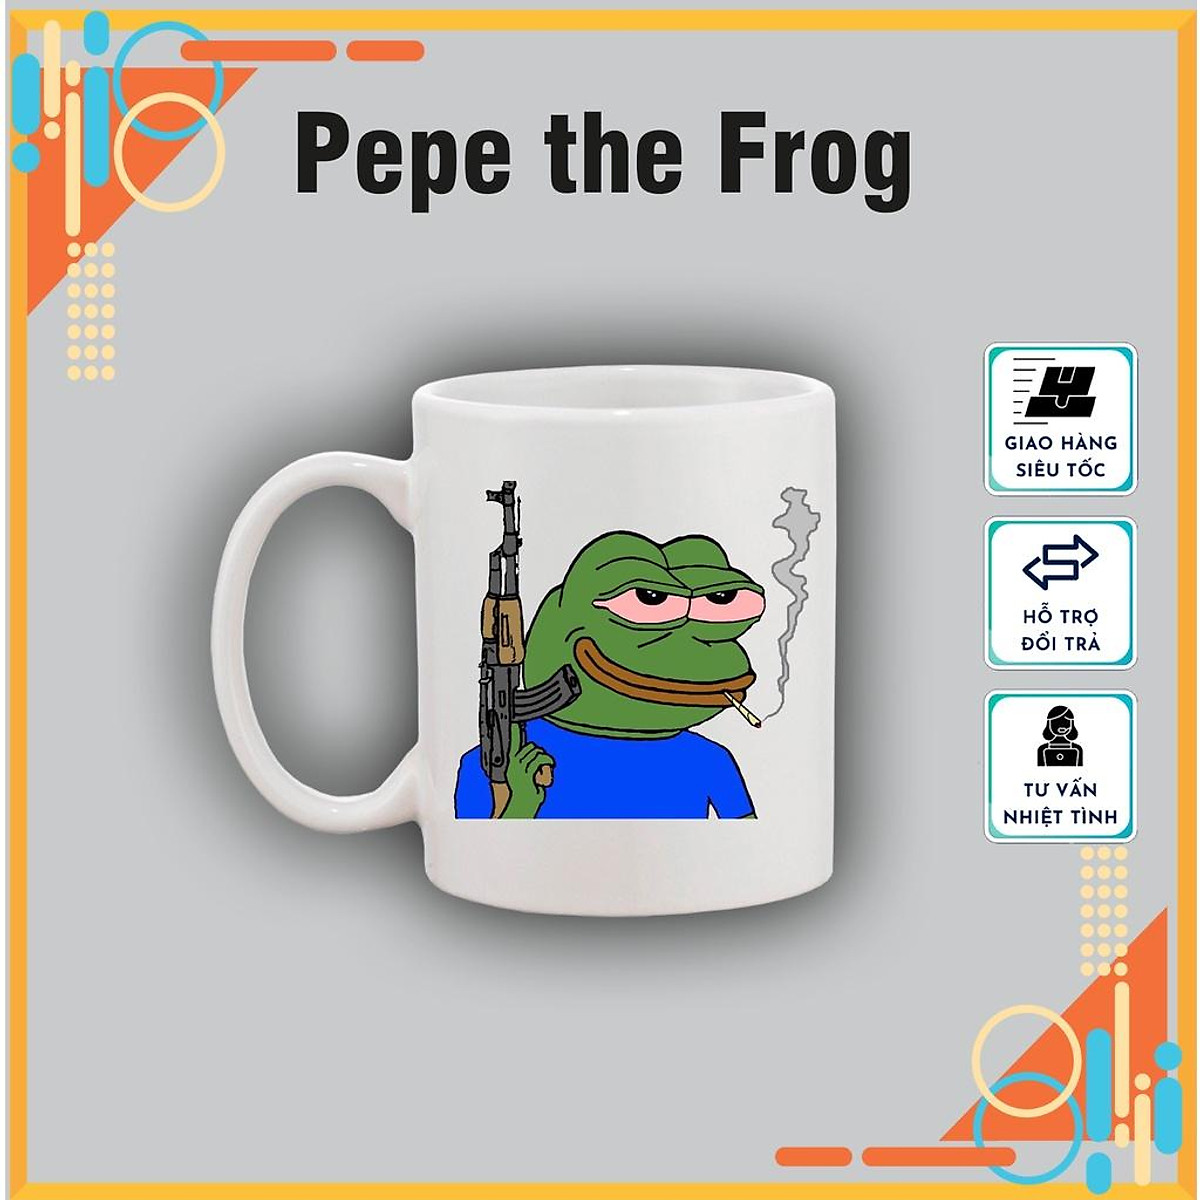 Mua Cốc sứ Ếch Pepe đáng yêu, cốc sứ in hình Ếch vozer dễ thương ...